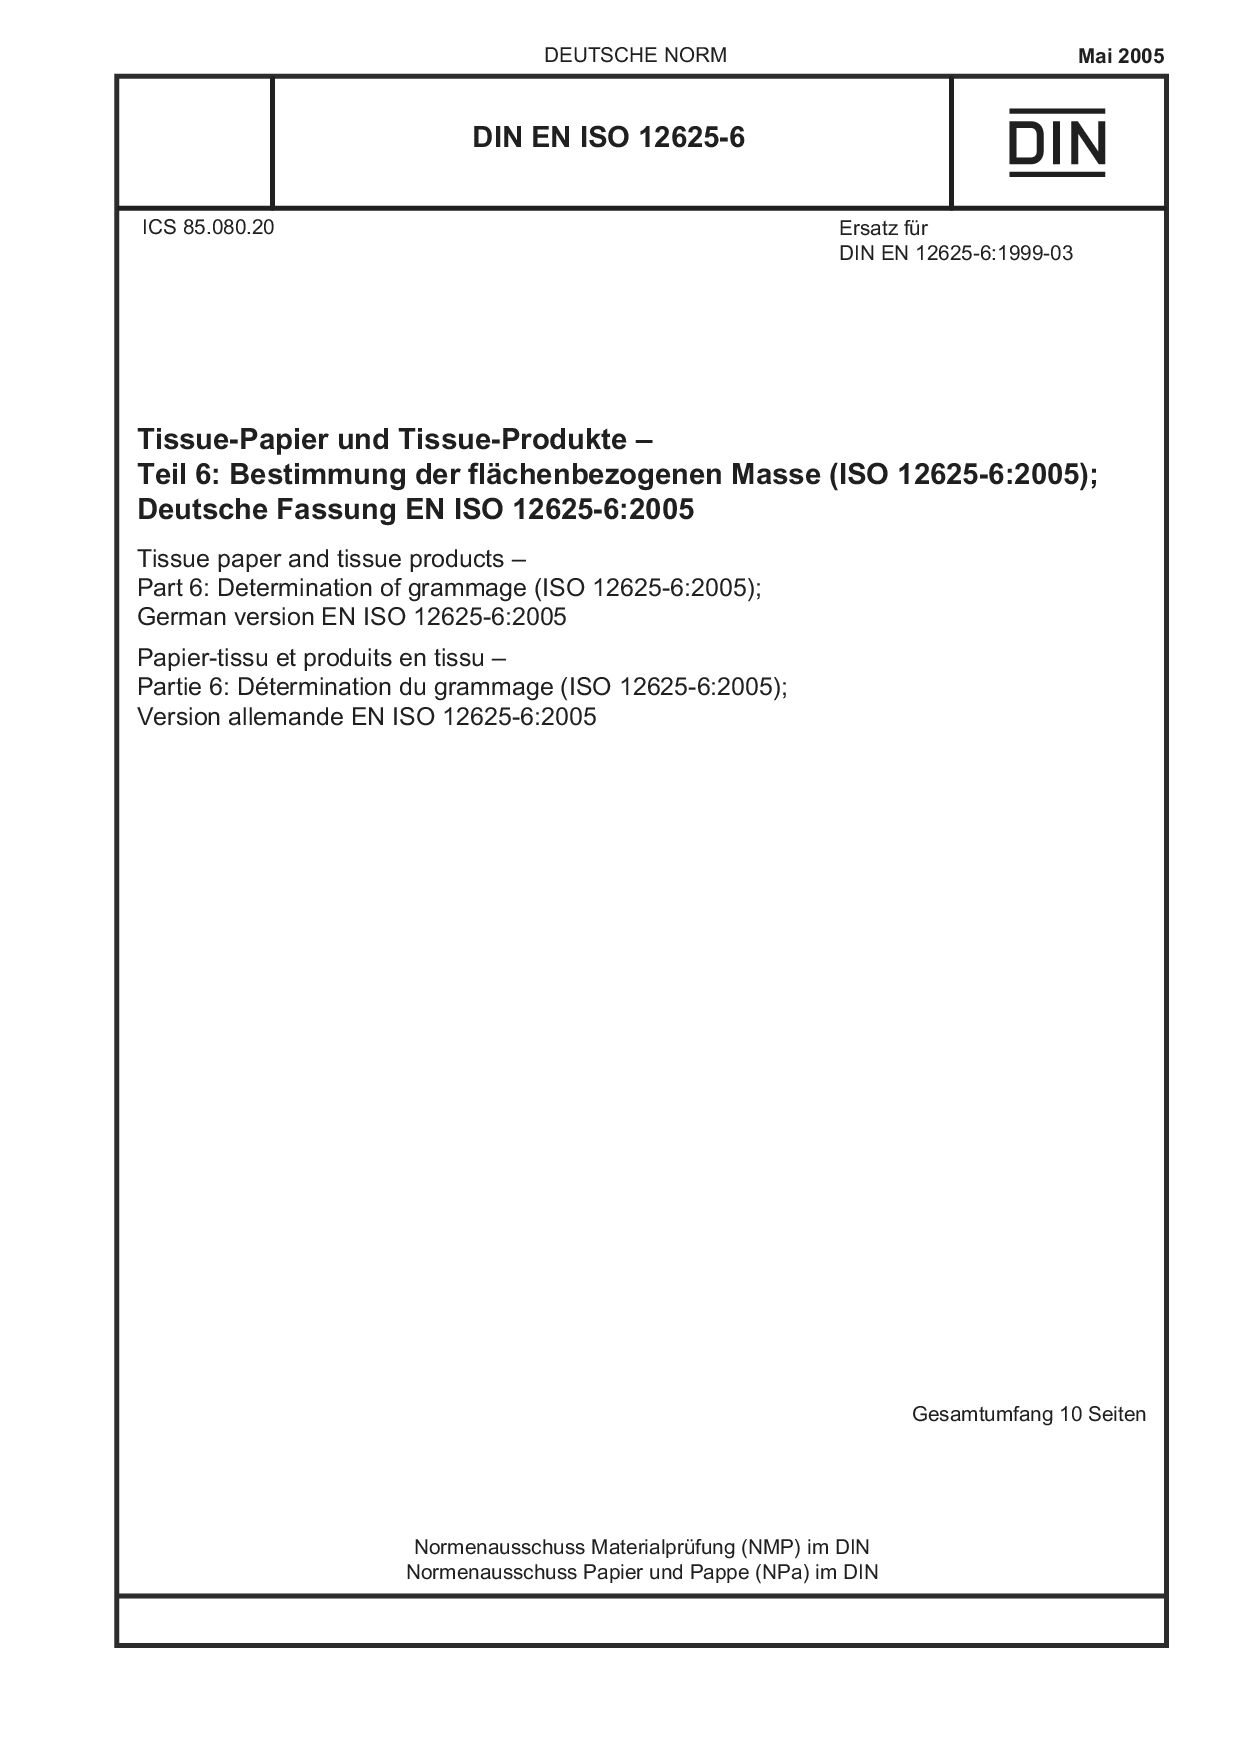 DIN EN ISO 12625-6:2005